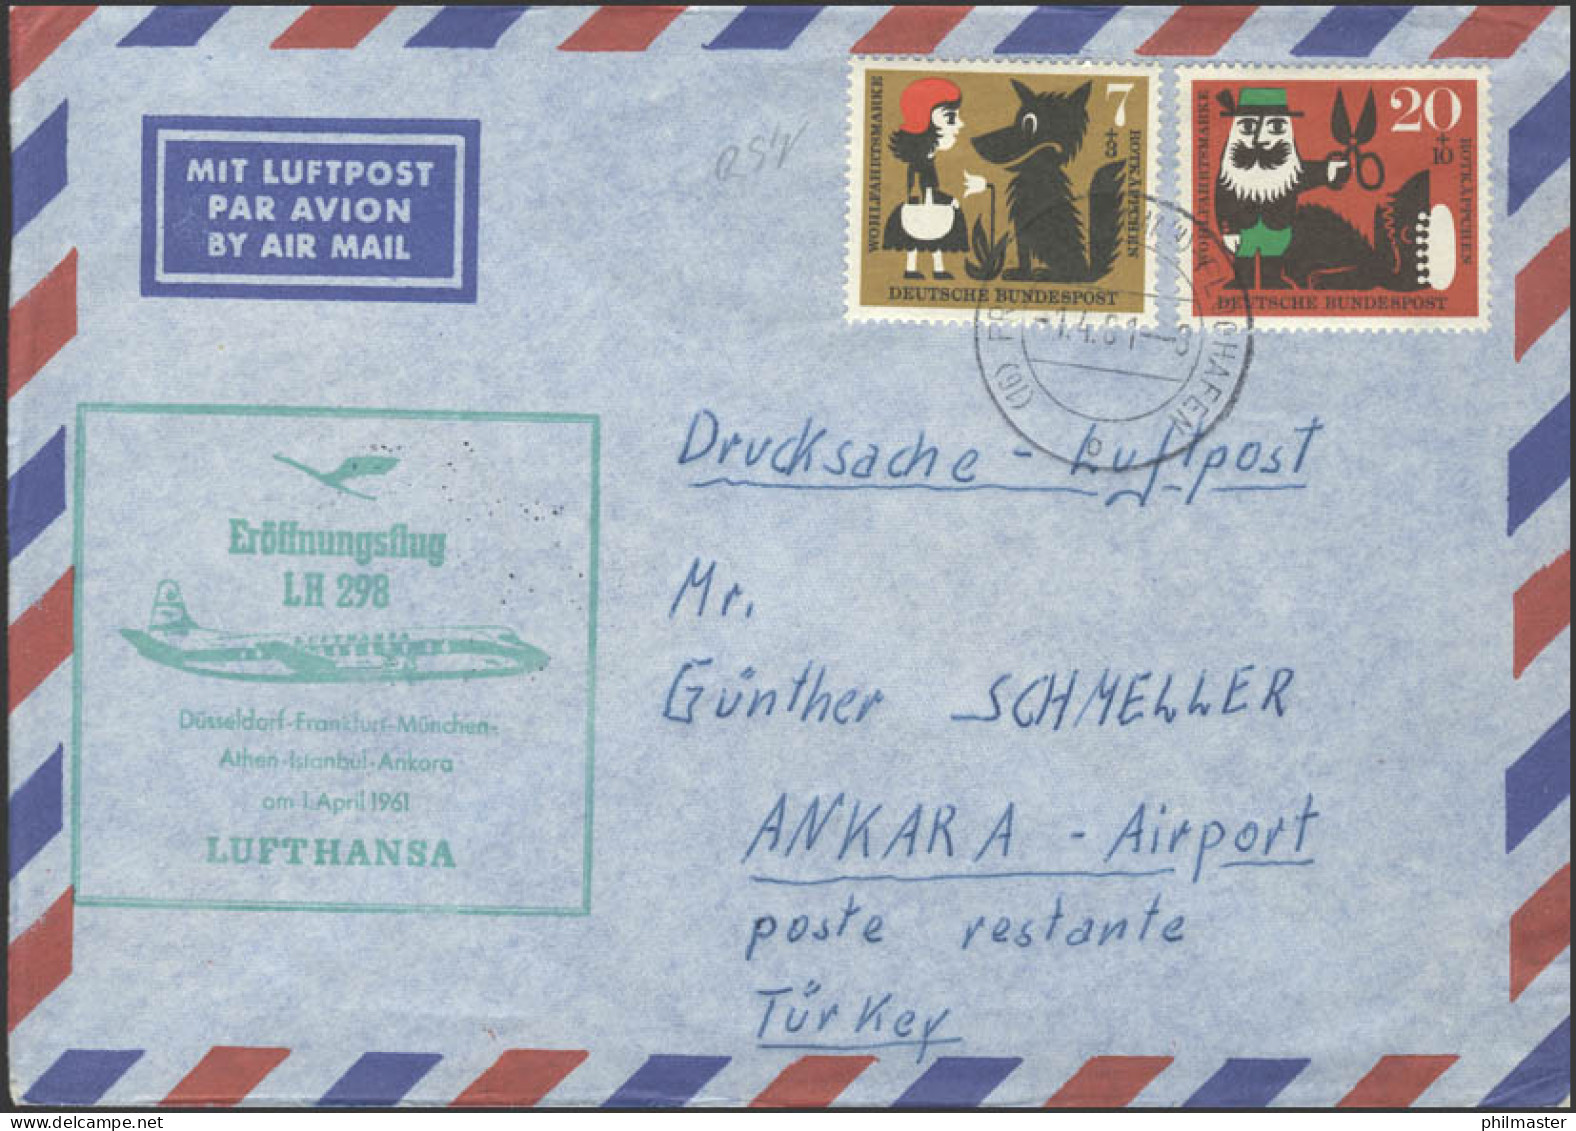 Eröffnungsflug LH 298 Düsseldorf-Frankfurt-Ankara Am 01.04.1961 - Autres (Air)